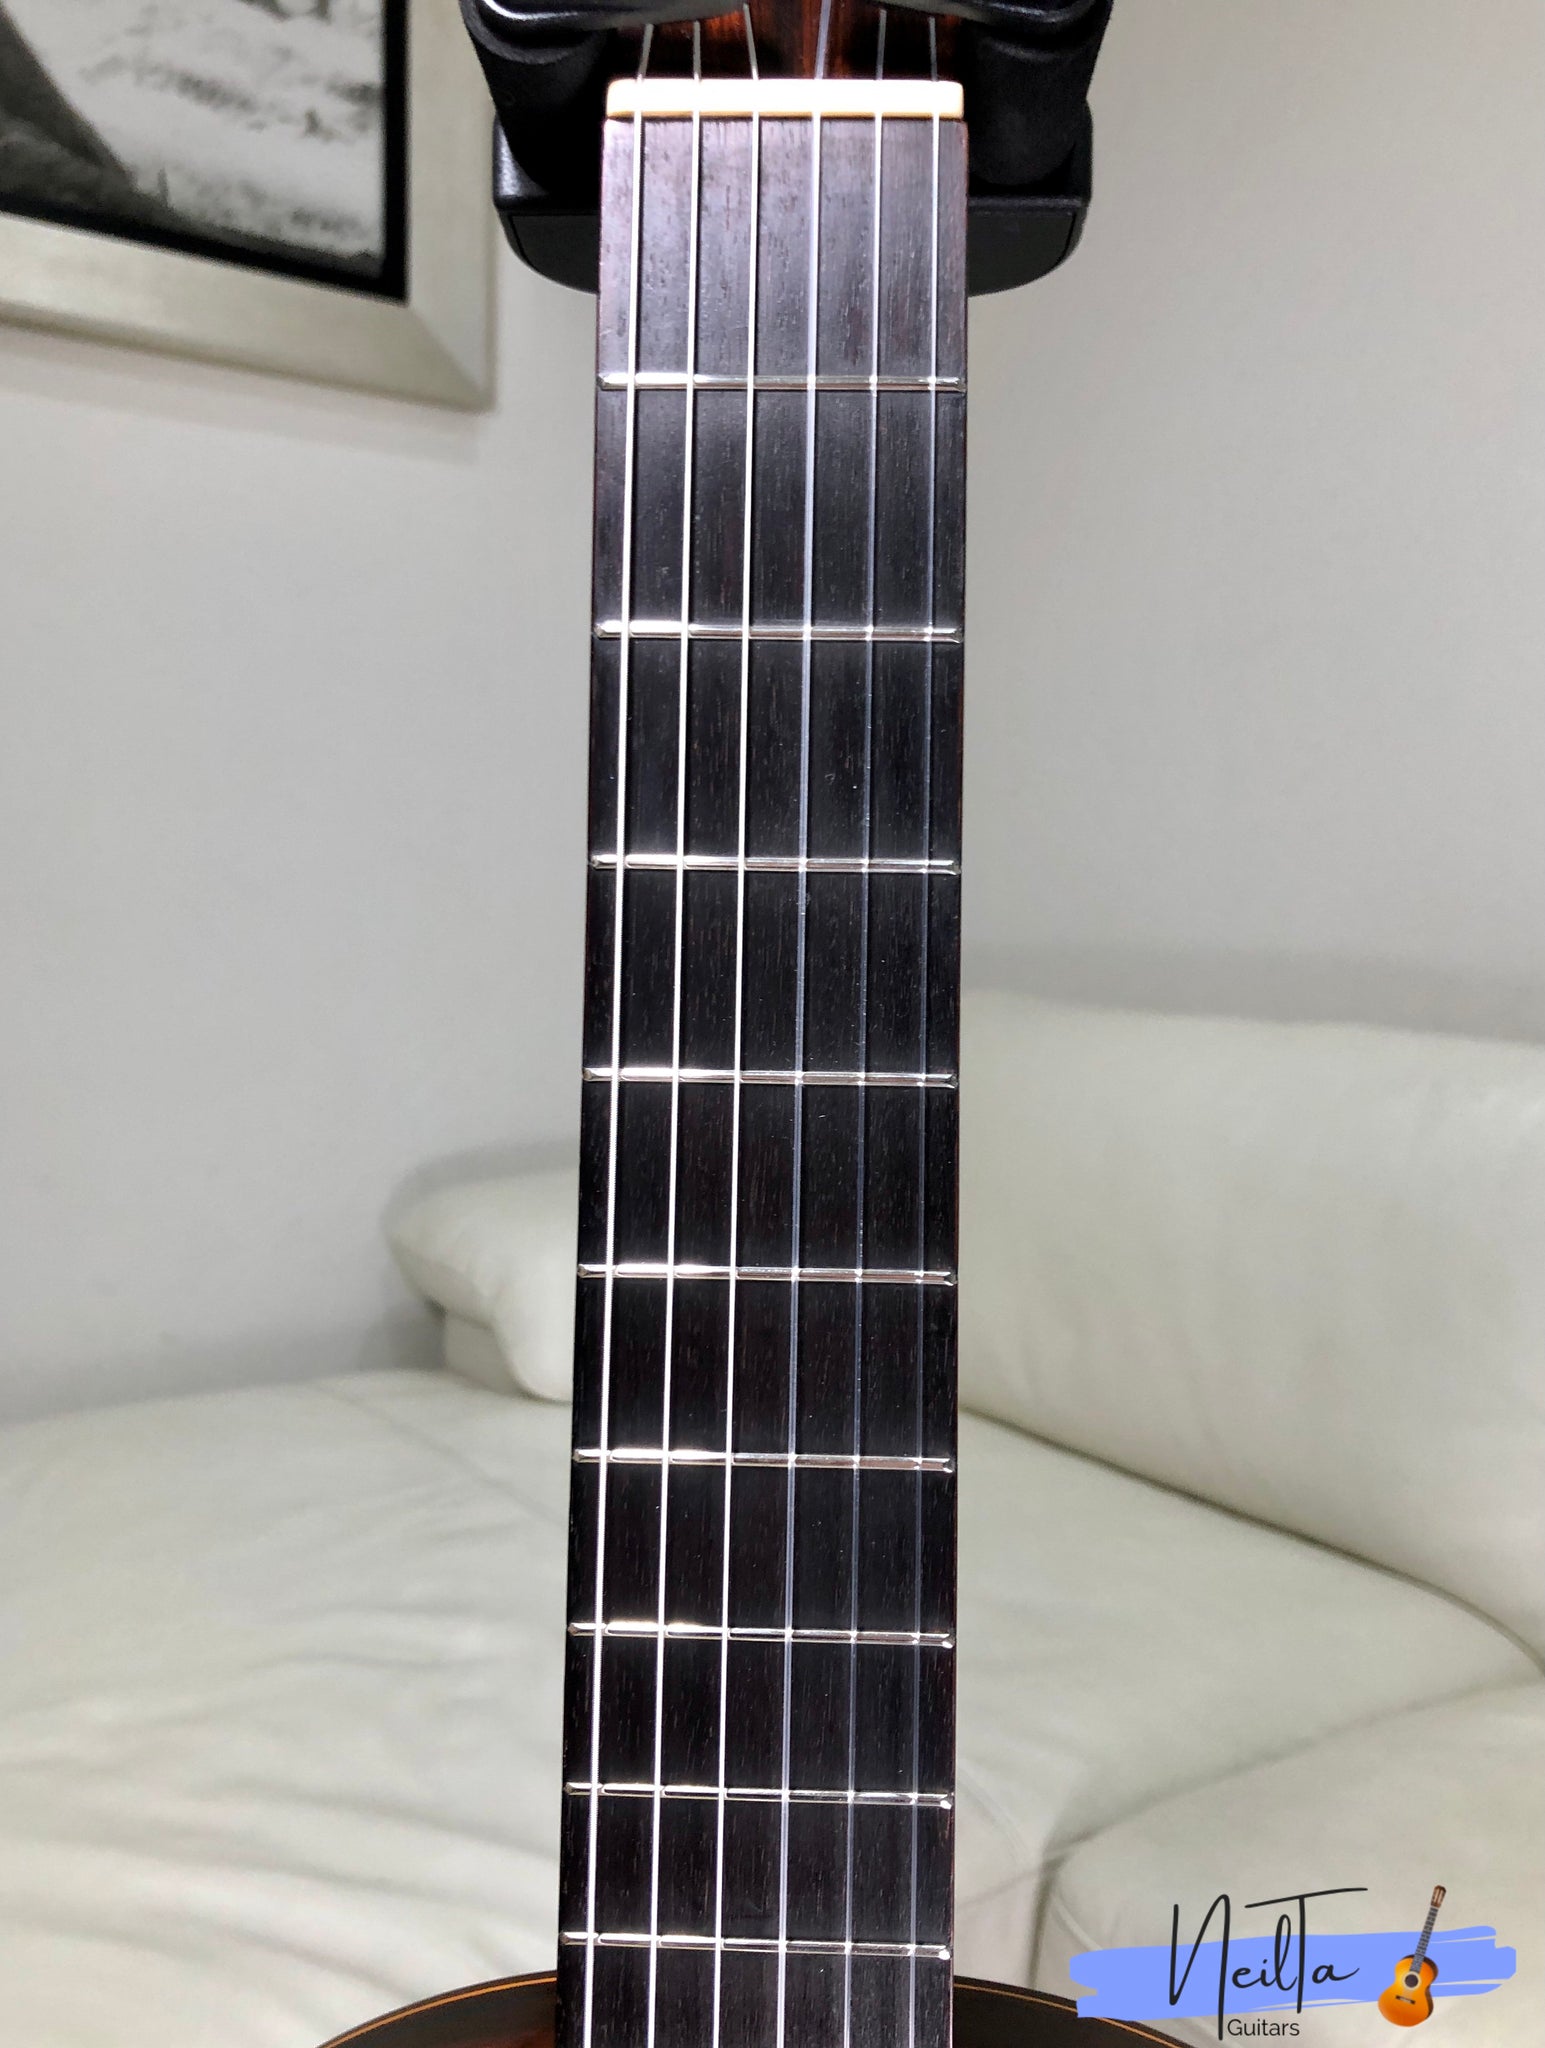 Grand Shinano GS-150 Classical Concert Guitar – Neil Ta Music